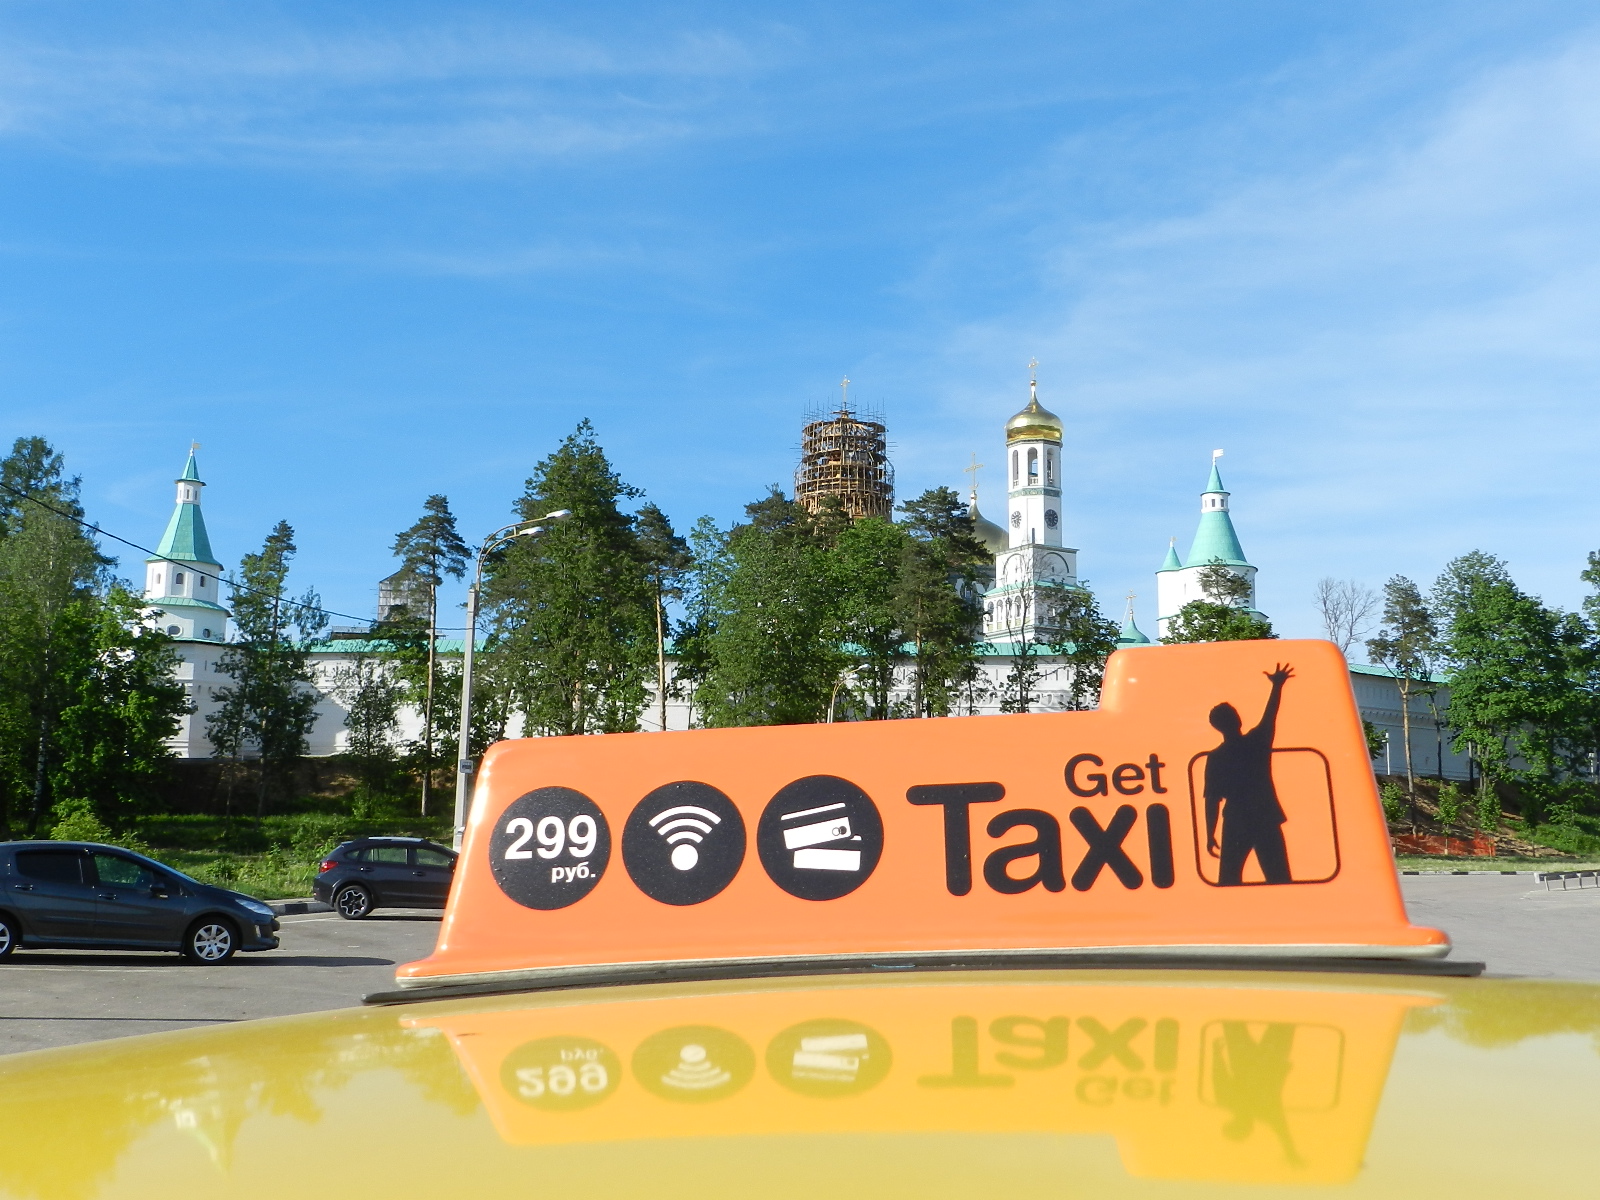 taksi-po-cene-obschestvennogo-transporta